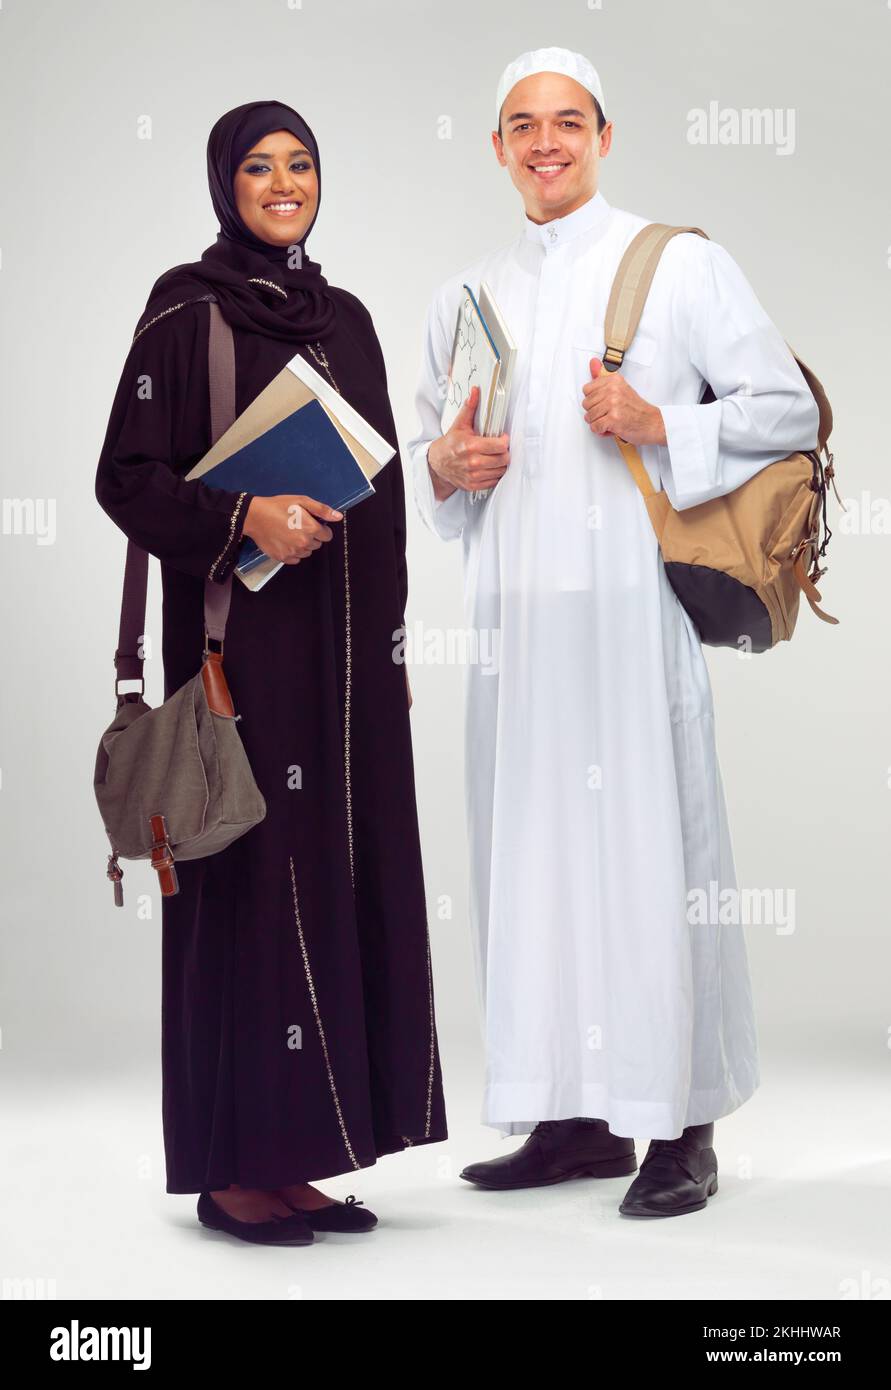 Bildung ist von entscheidender Bedeutung. Studioporträt zweier junger arabischer Schüler. Stockfoto